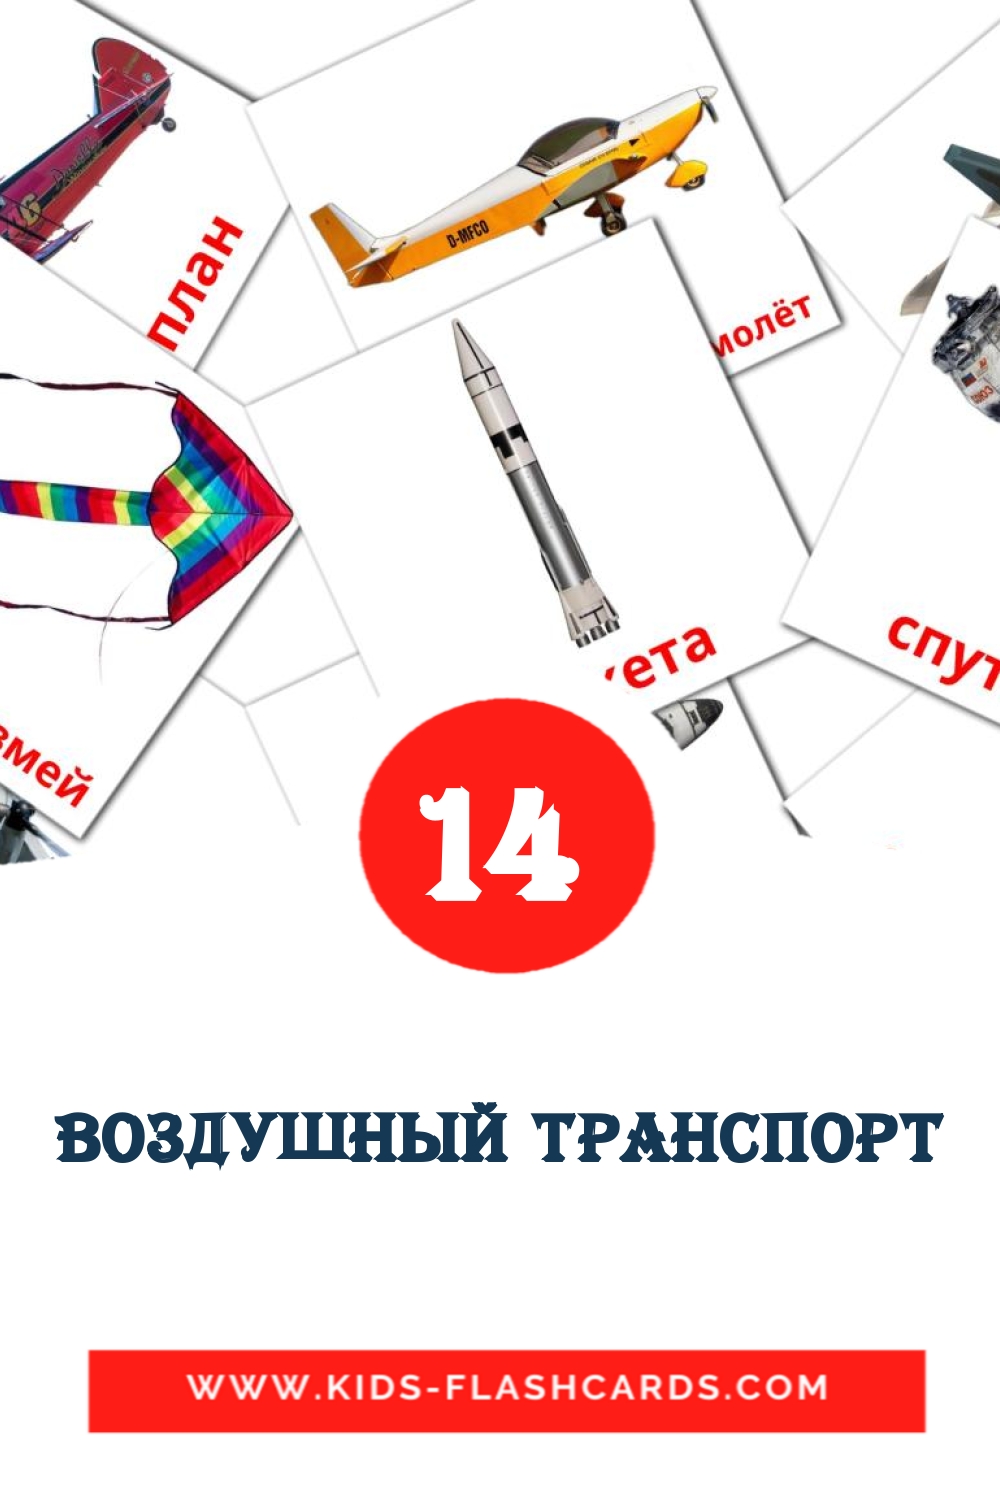 14 Воздушный транспорт fotokaarten voor kleuters in het rus